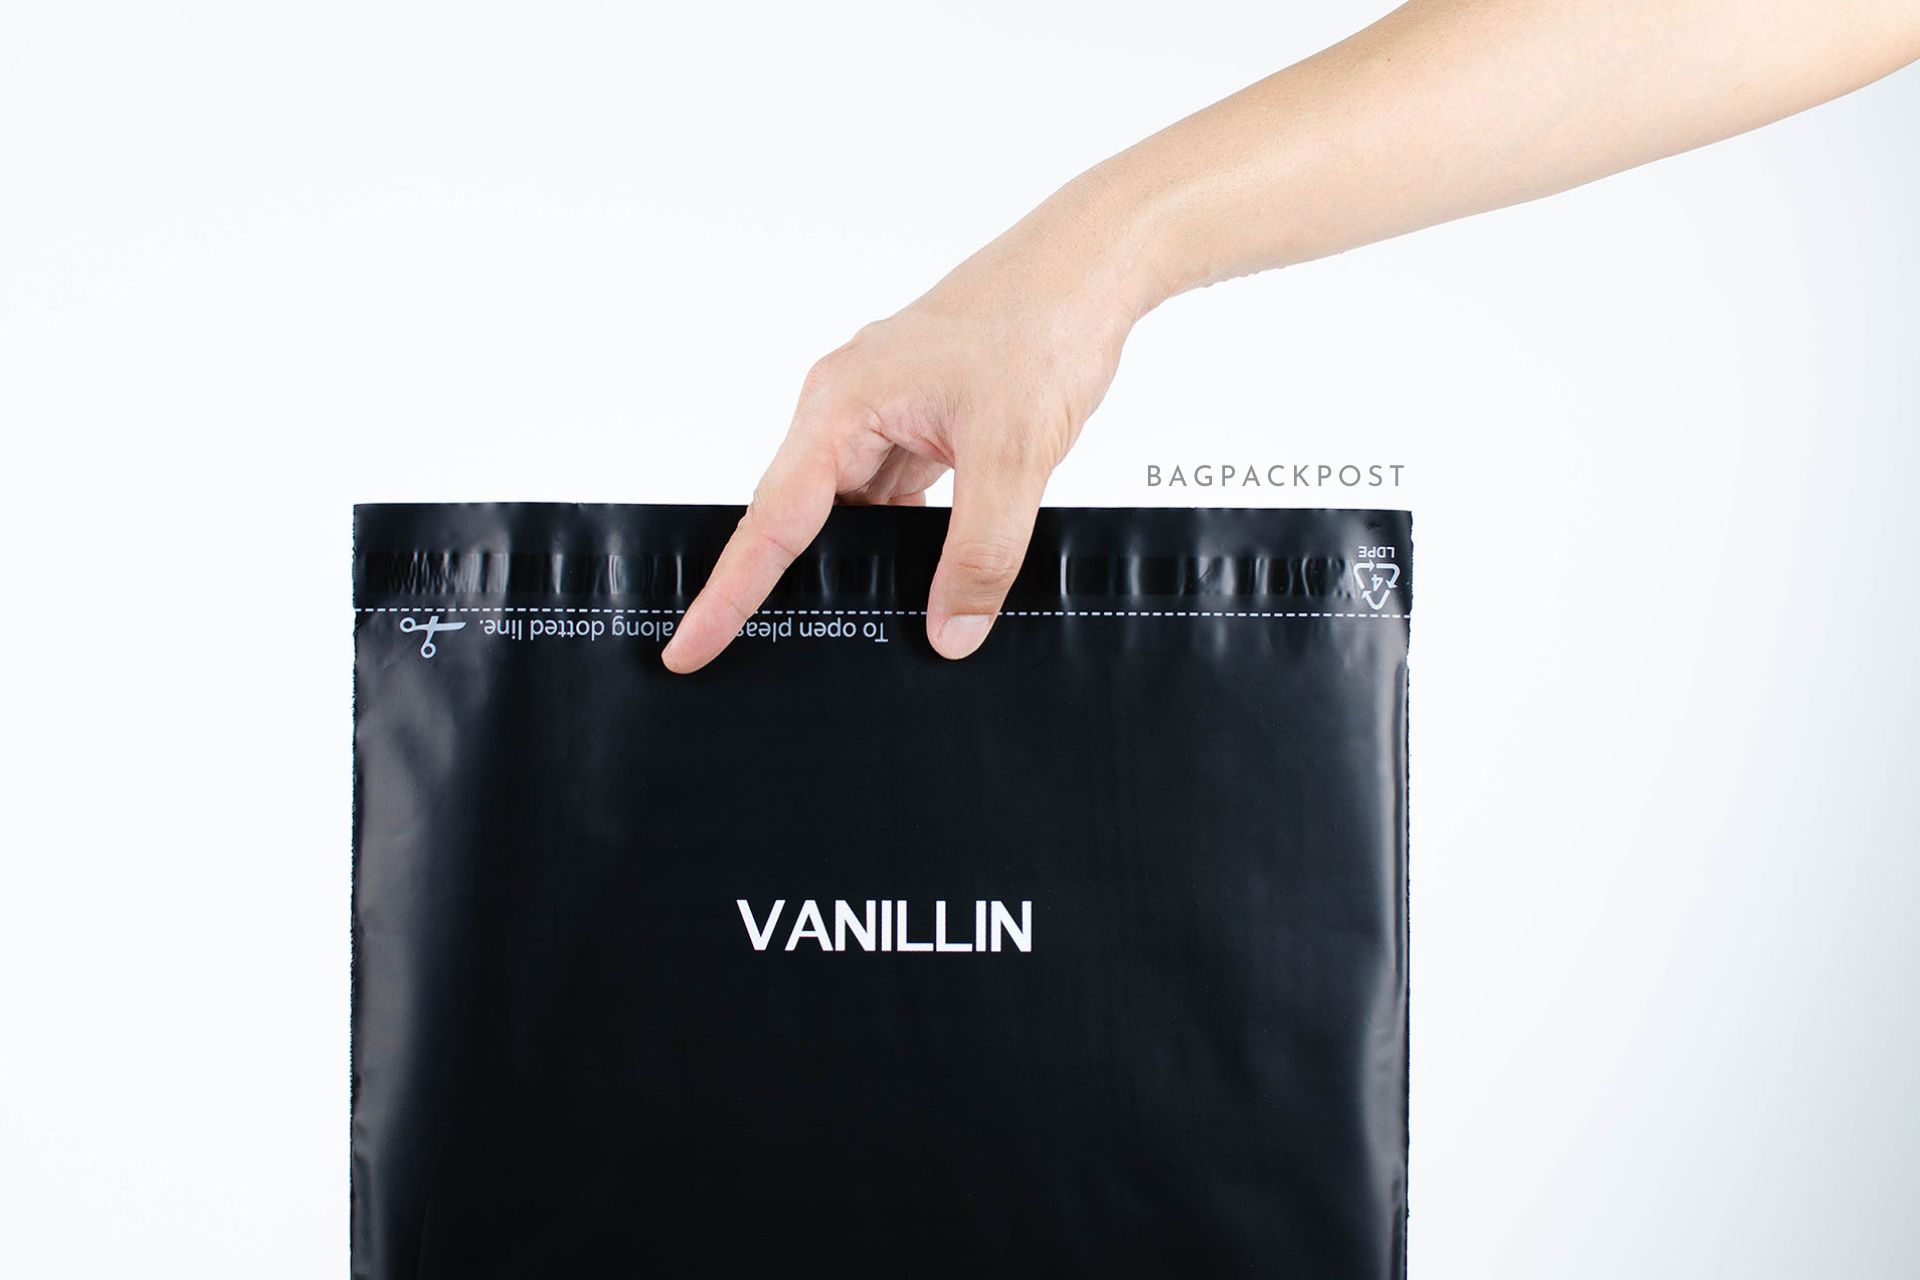 ผลิตถุงไปรษณีย์ ถุงพัสดุ ถุงพัสดุพิมพ์แบรนด์ ซองไปรษณีย์พิมพ์ลาย Vanillin Studio ซองไปรษณีย์สีดำ ถุงไปรษณีย์พิมพ์ลาย 1 BagPackPost